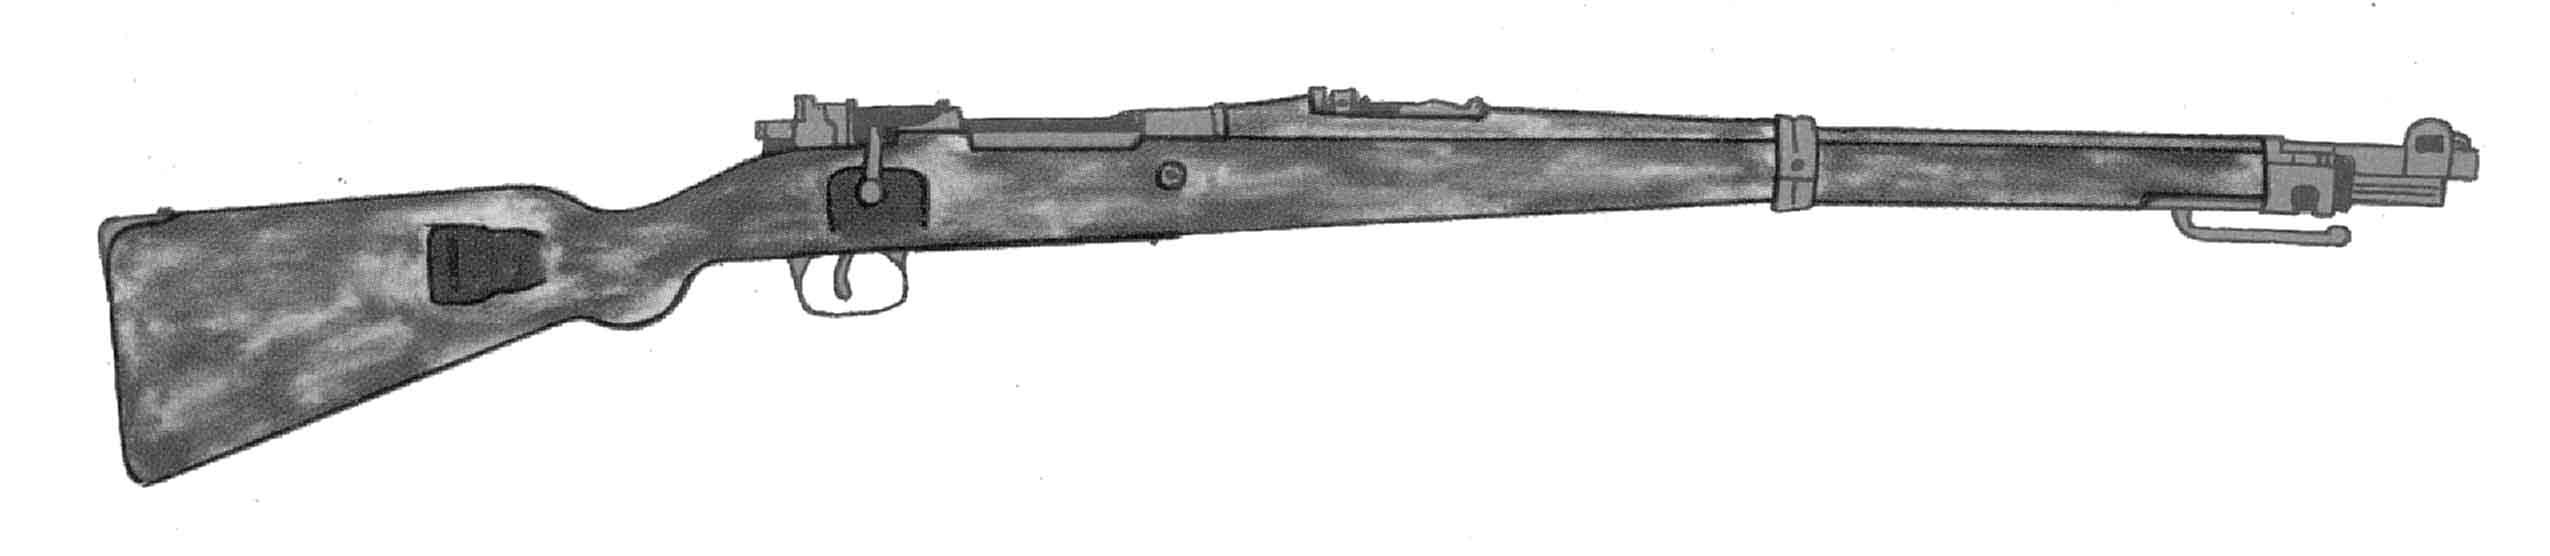 Karabinek Mauser wz.98